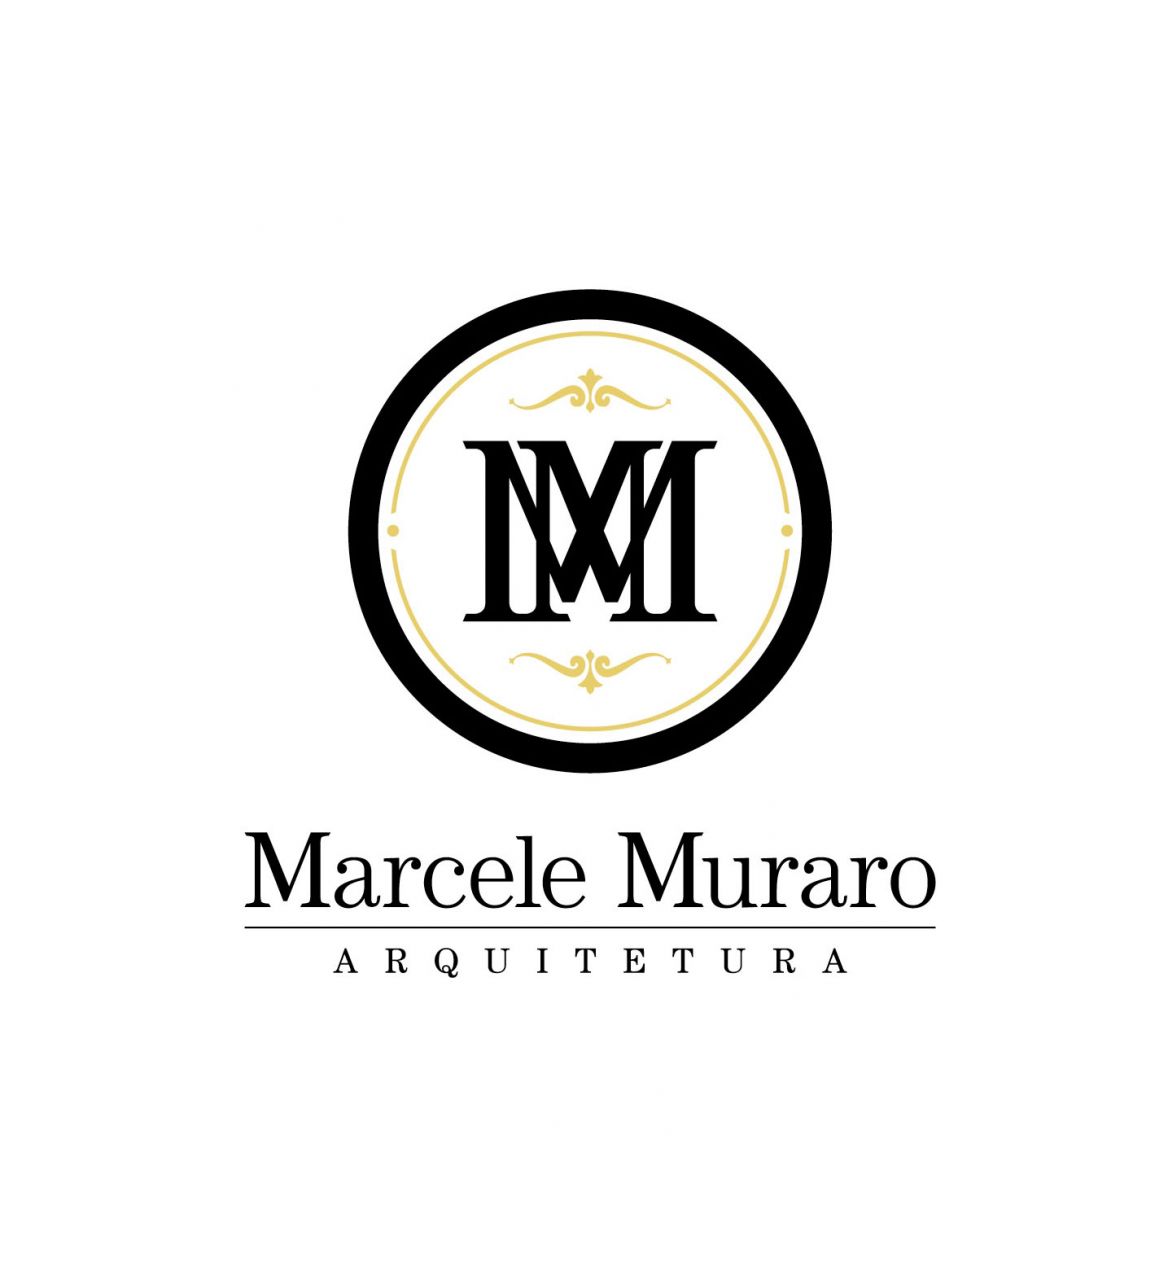 Marcele Muraro